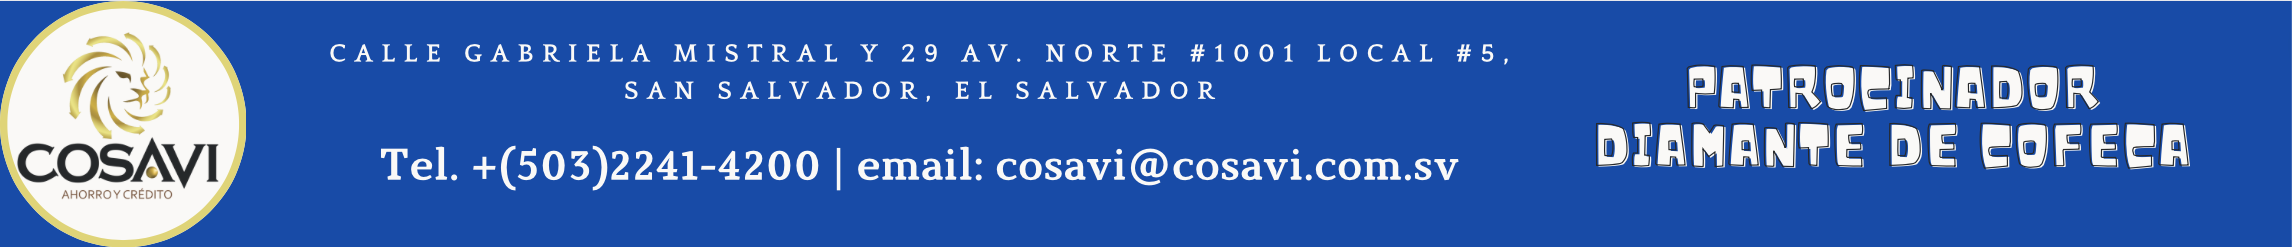 COSAVI, patrocinador diamante de COFECA